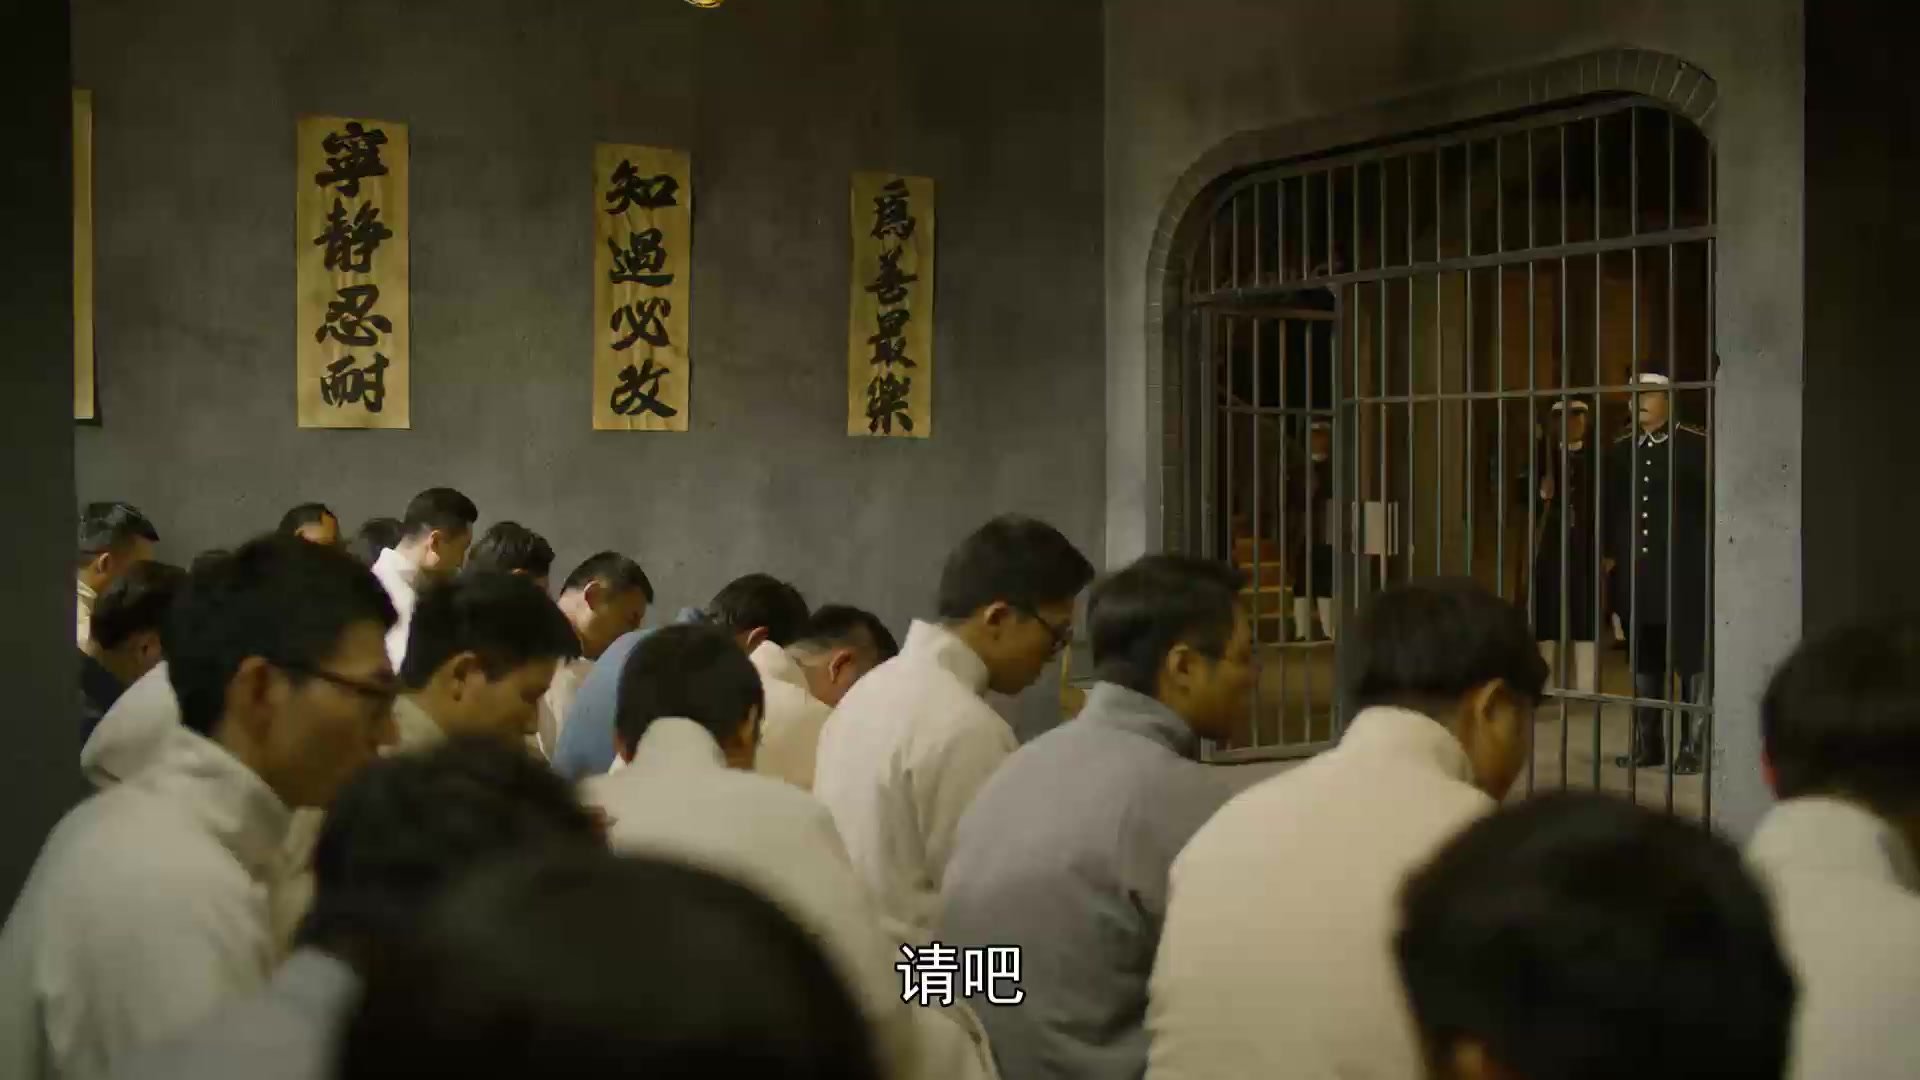 《觉醒年代》吴炳湘打开牢房大门 蔡元培亲自去接学生